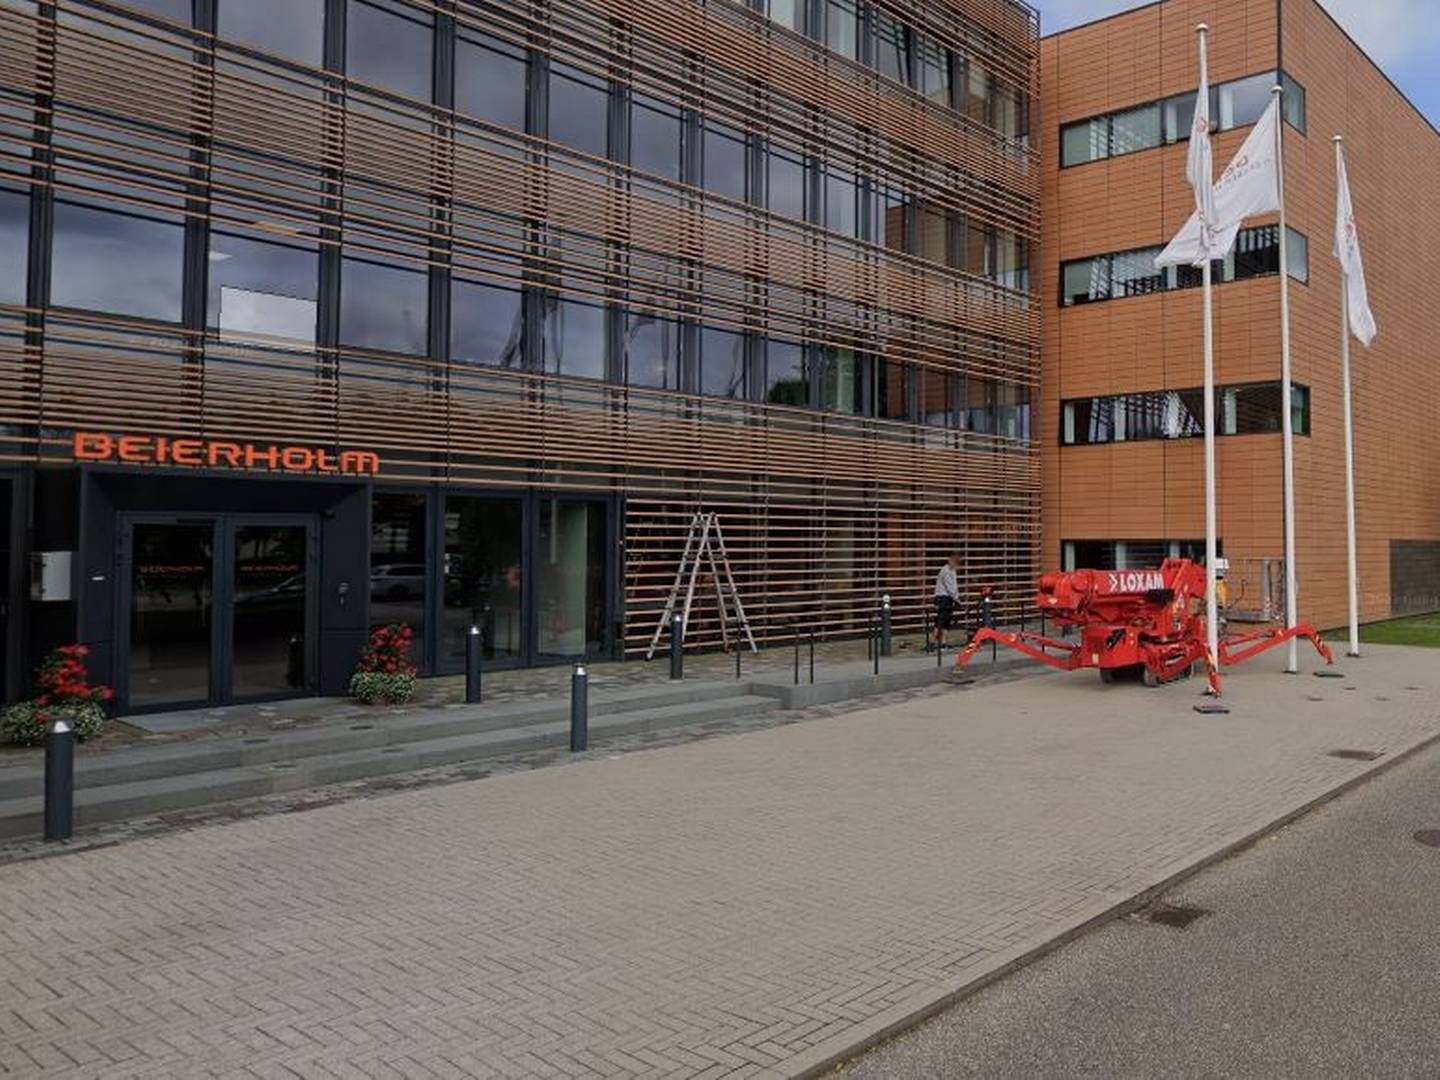 Beierholm har kontorer rundt omkring i Danmark. Her kontoret i Søborg. | Foto: Google Maps